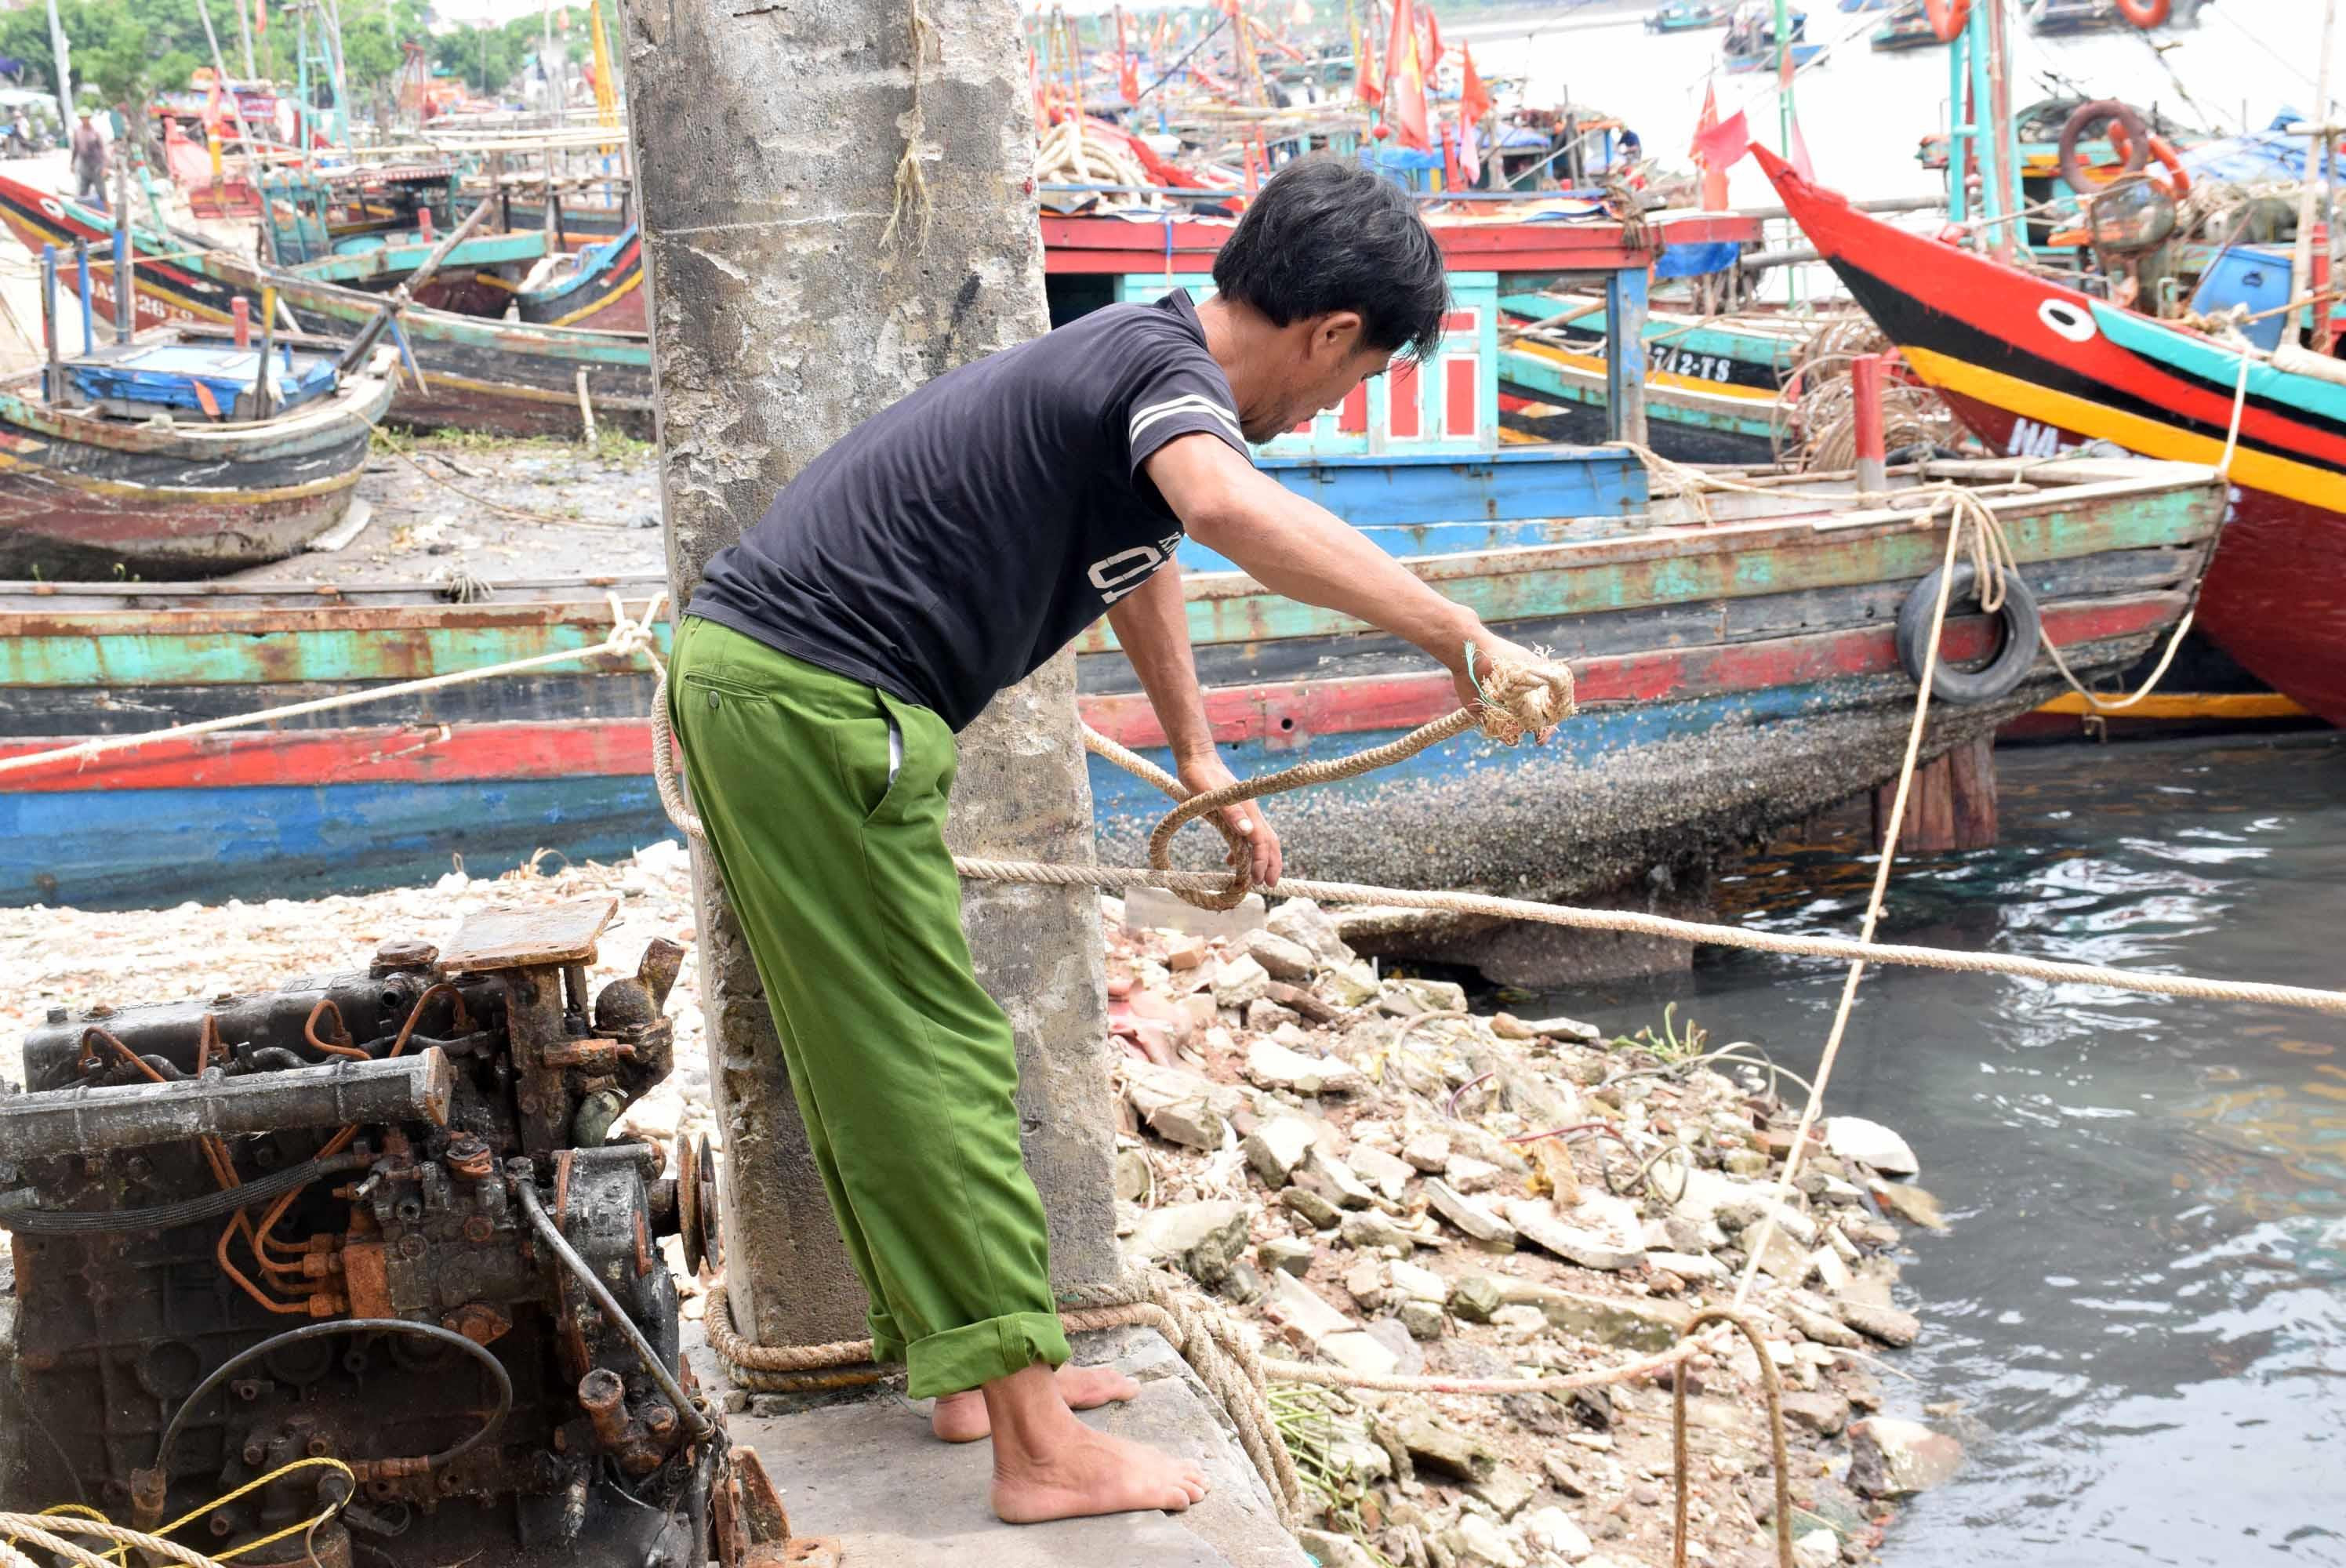 Để tránh thiệt hại do cơn bão số 4 gây ra, từ chiều 28/8 huyện Diễn Châu cấm biển đối với tất cả tàu thuyền. Ảnh: Xuân Hoàng